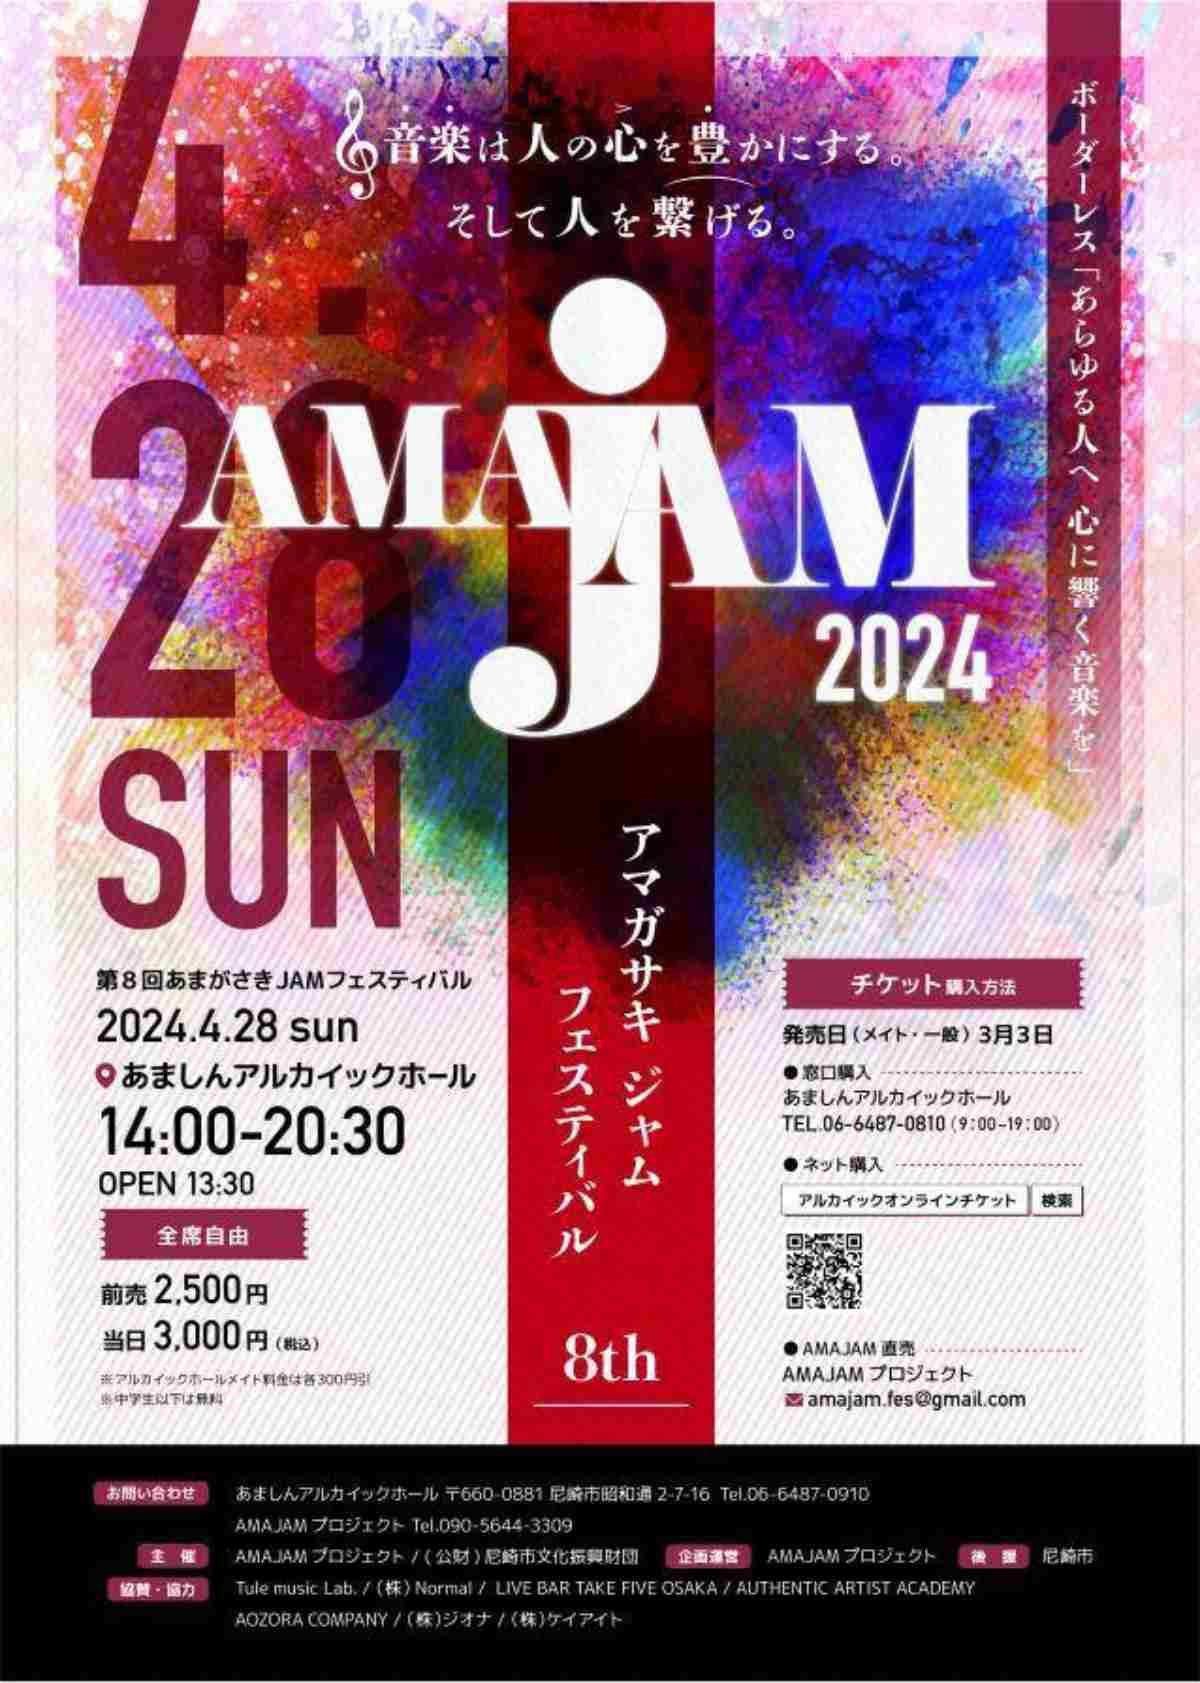 あましんアルカイックホールで『あまがさきJAMフェスティバル2024』を開催　尼崎市 [画像]